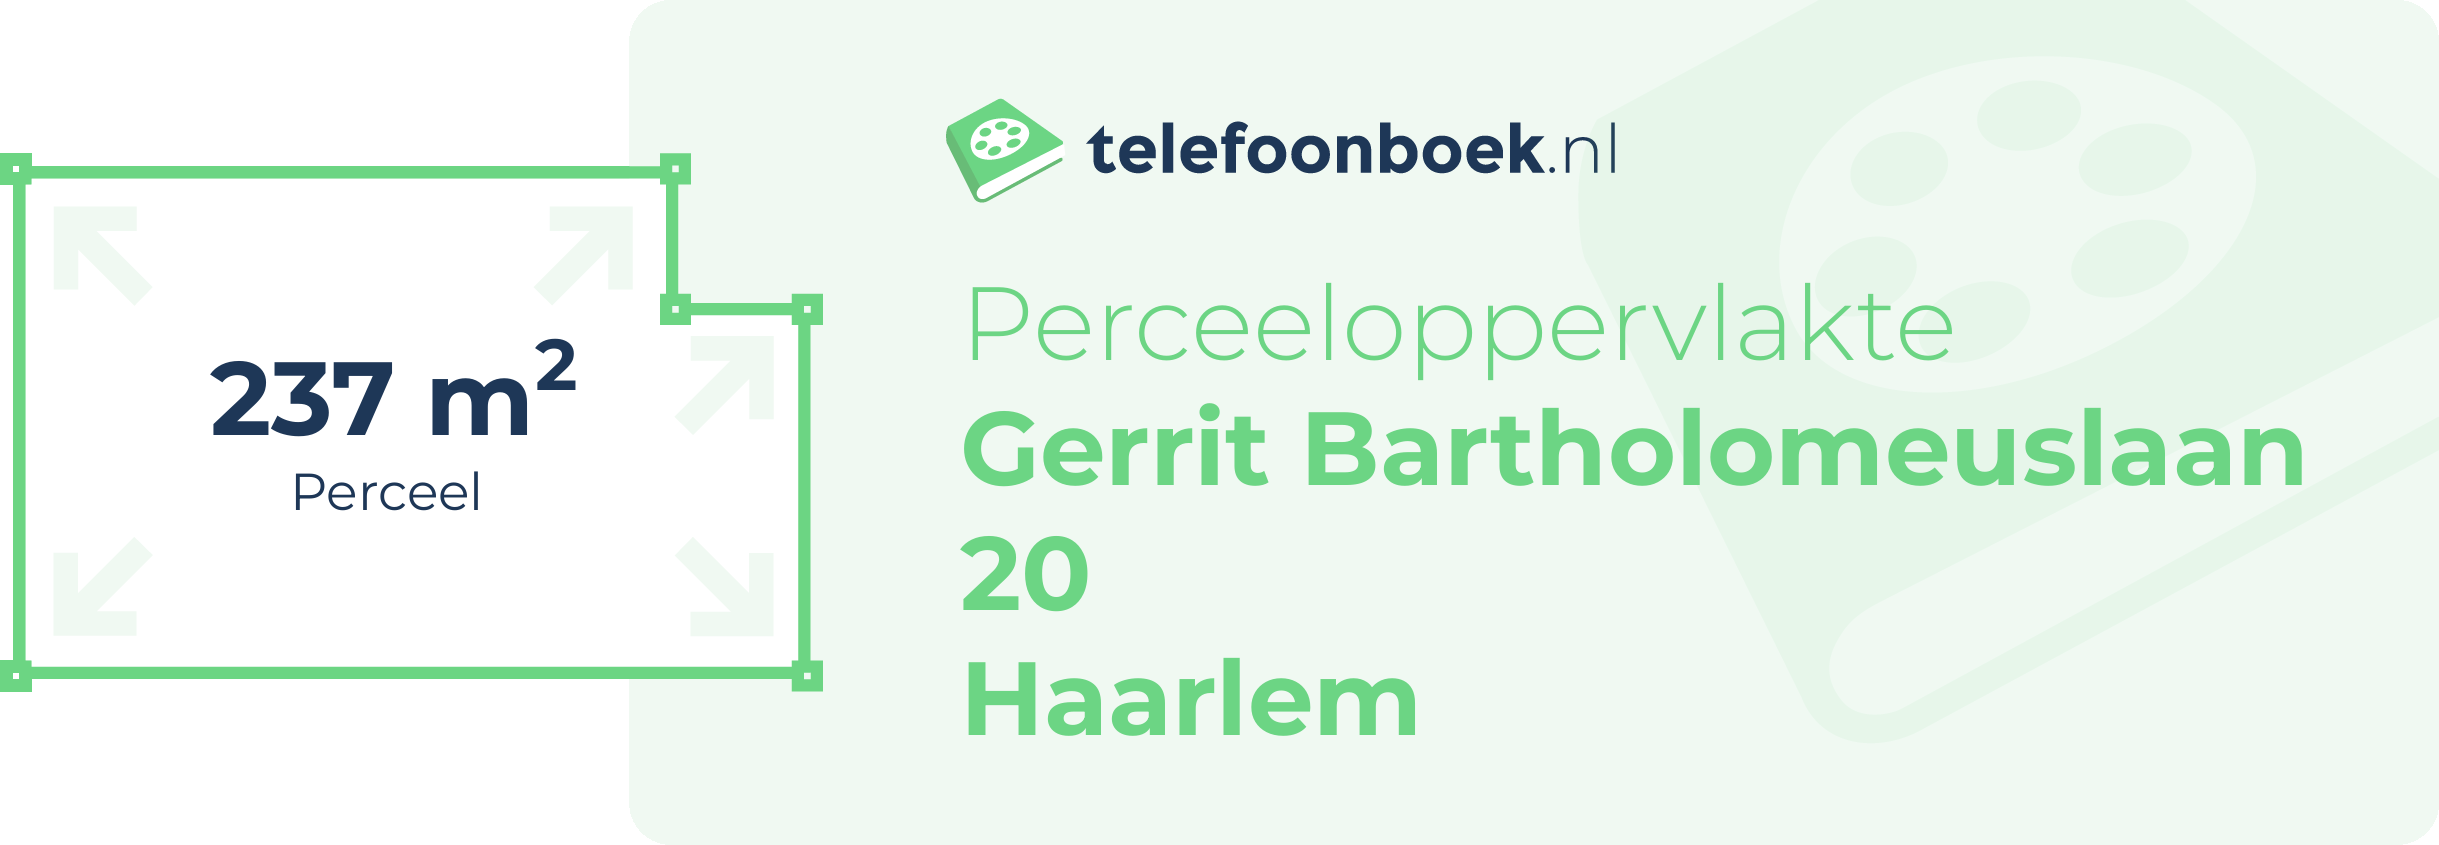 Perceeloppervlakte Gerrit Bartholomeuslaan 20 Haarlem